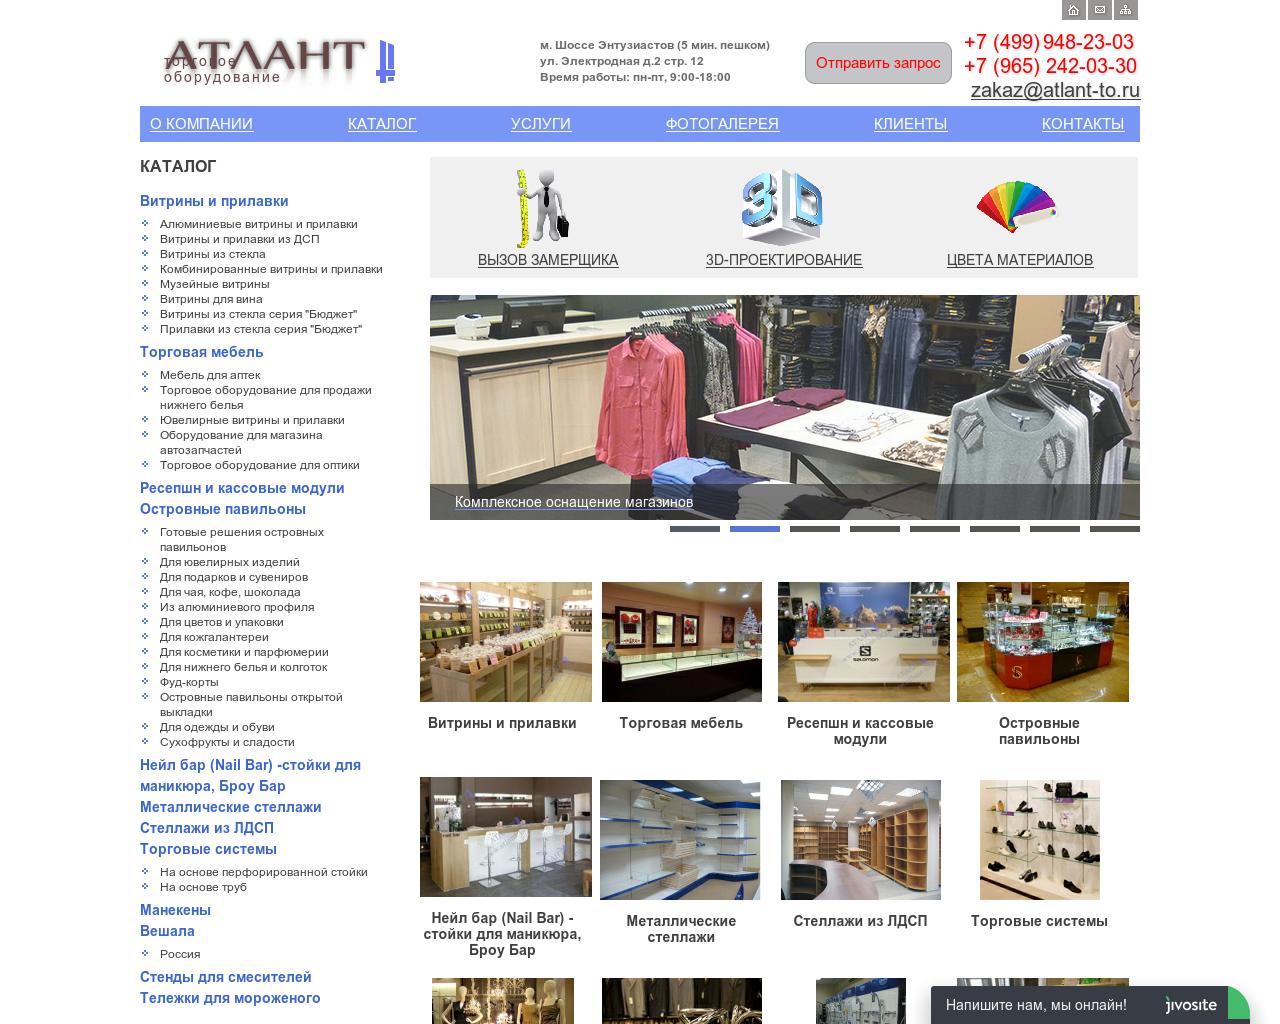 Изображение сайта atlant-to.ru в разрешении 1280x1024